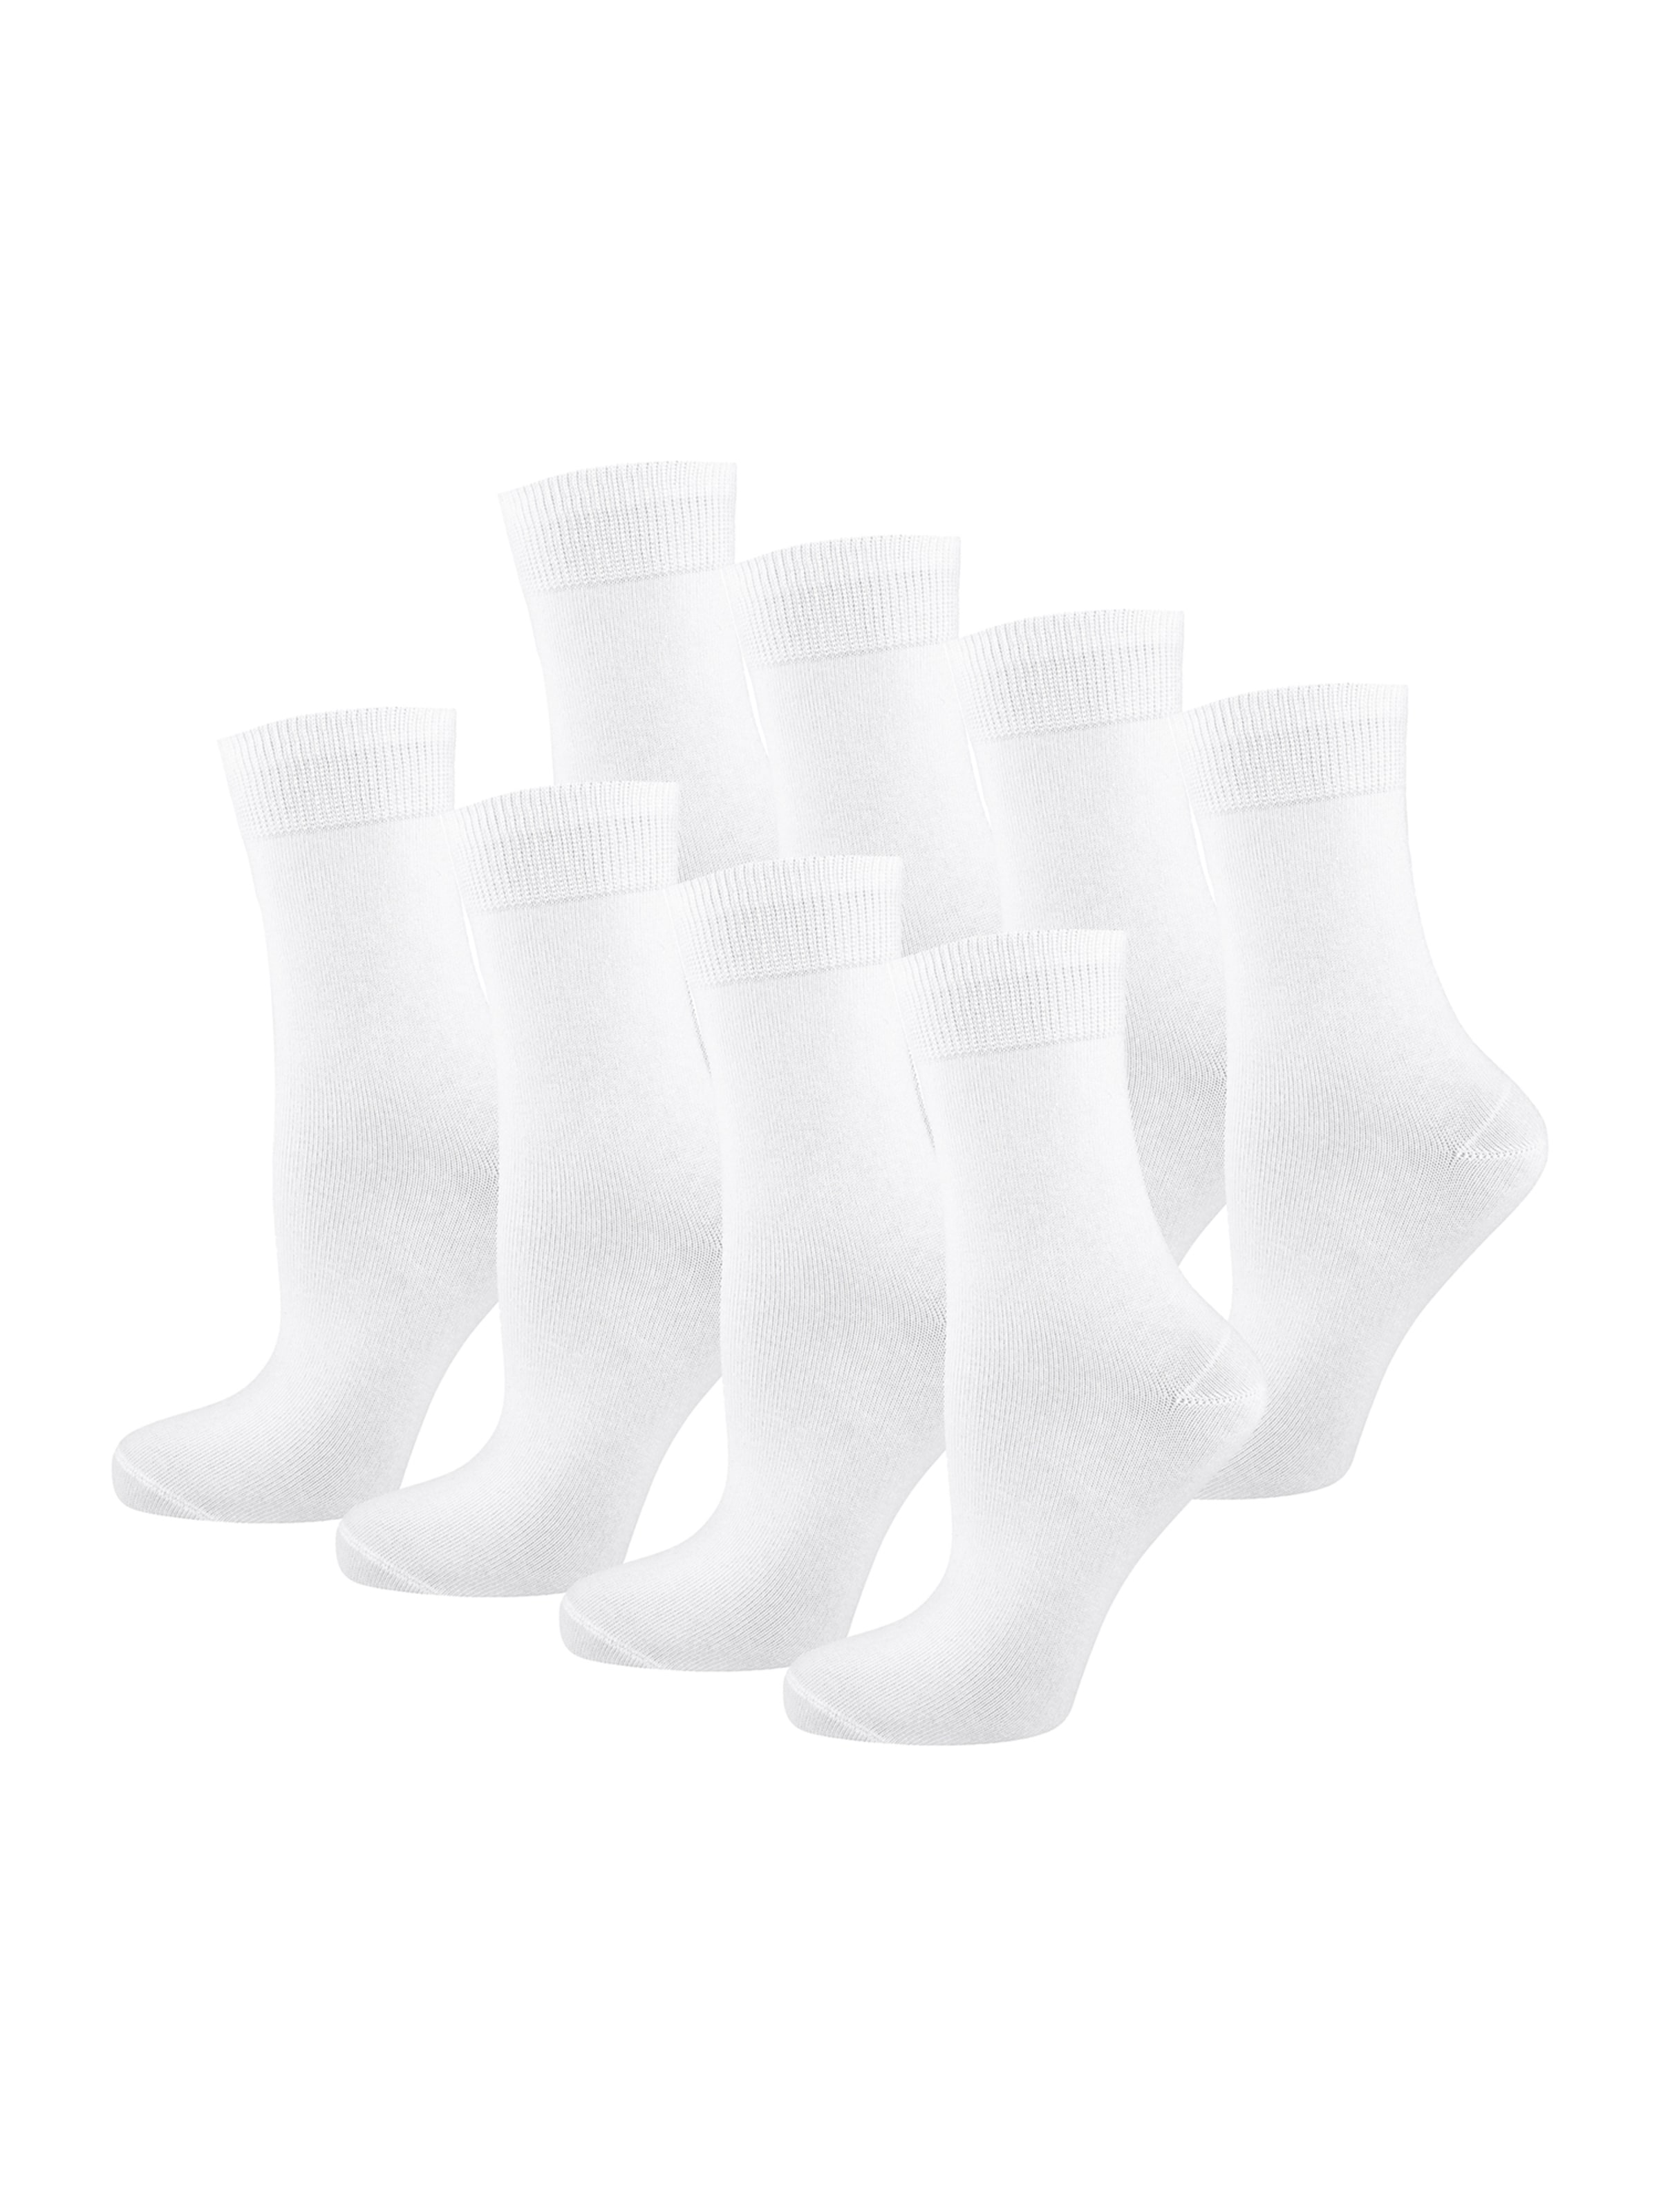 Frauen Wäsche Nur Die Socken in Weiß - RY93314